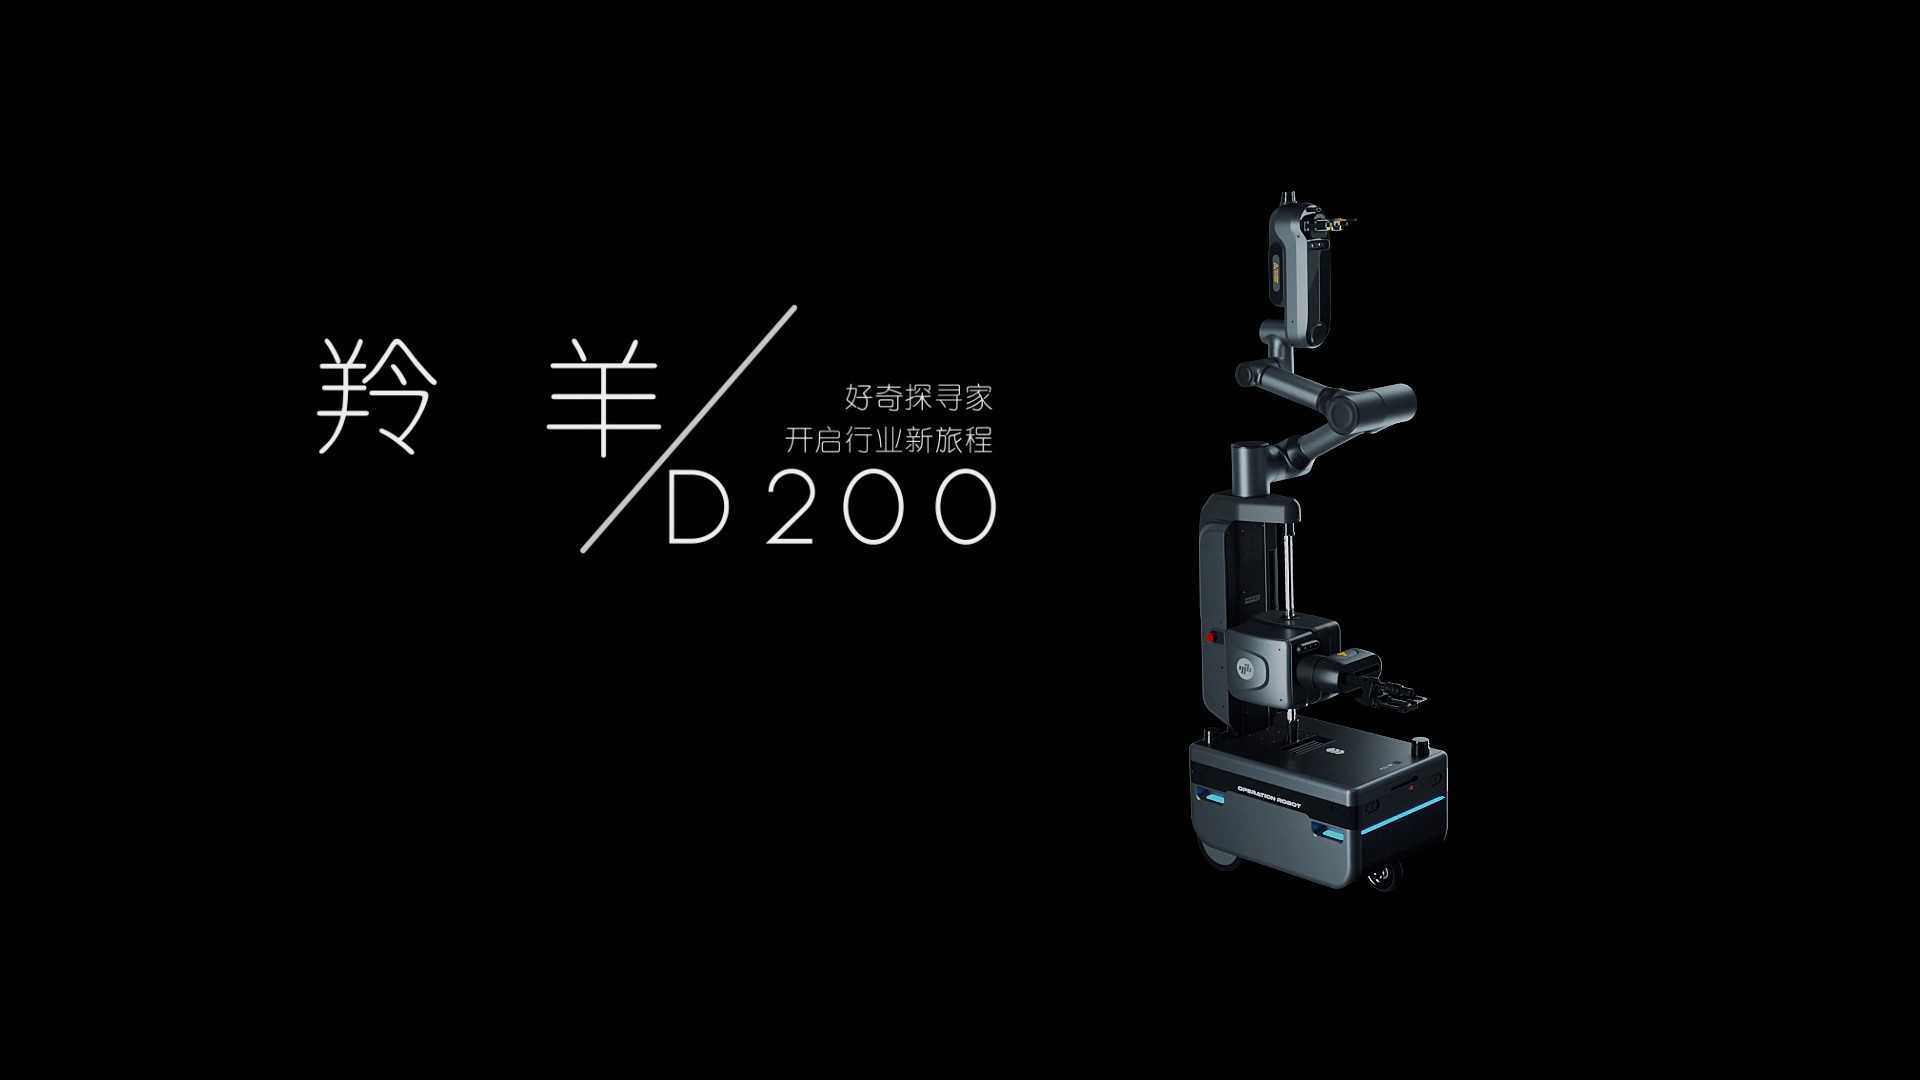 亿嘉和D200机器人三维展示